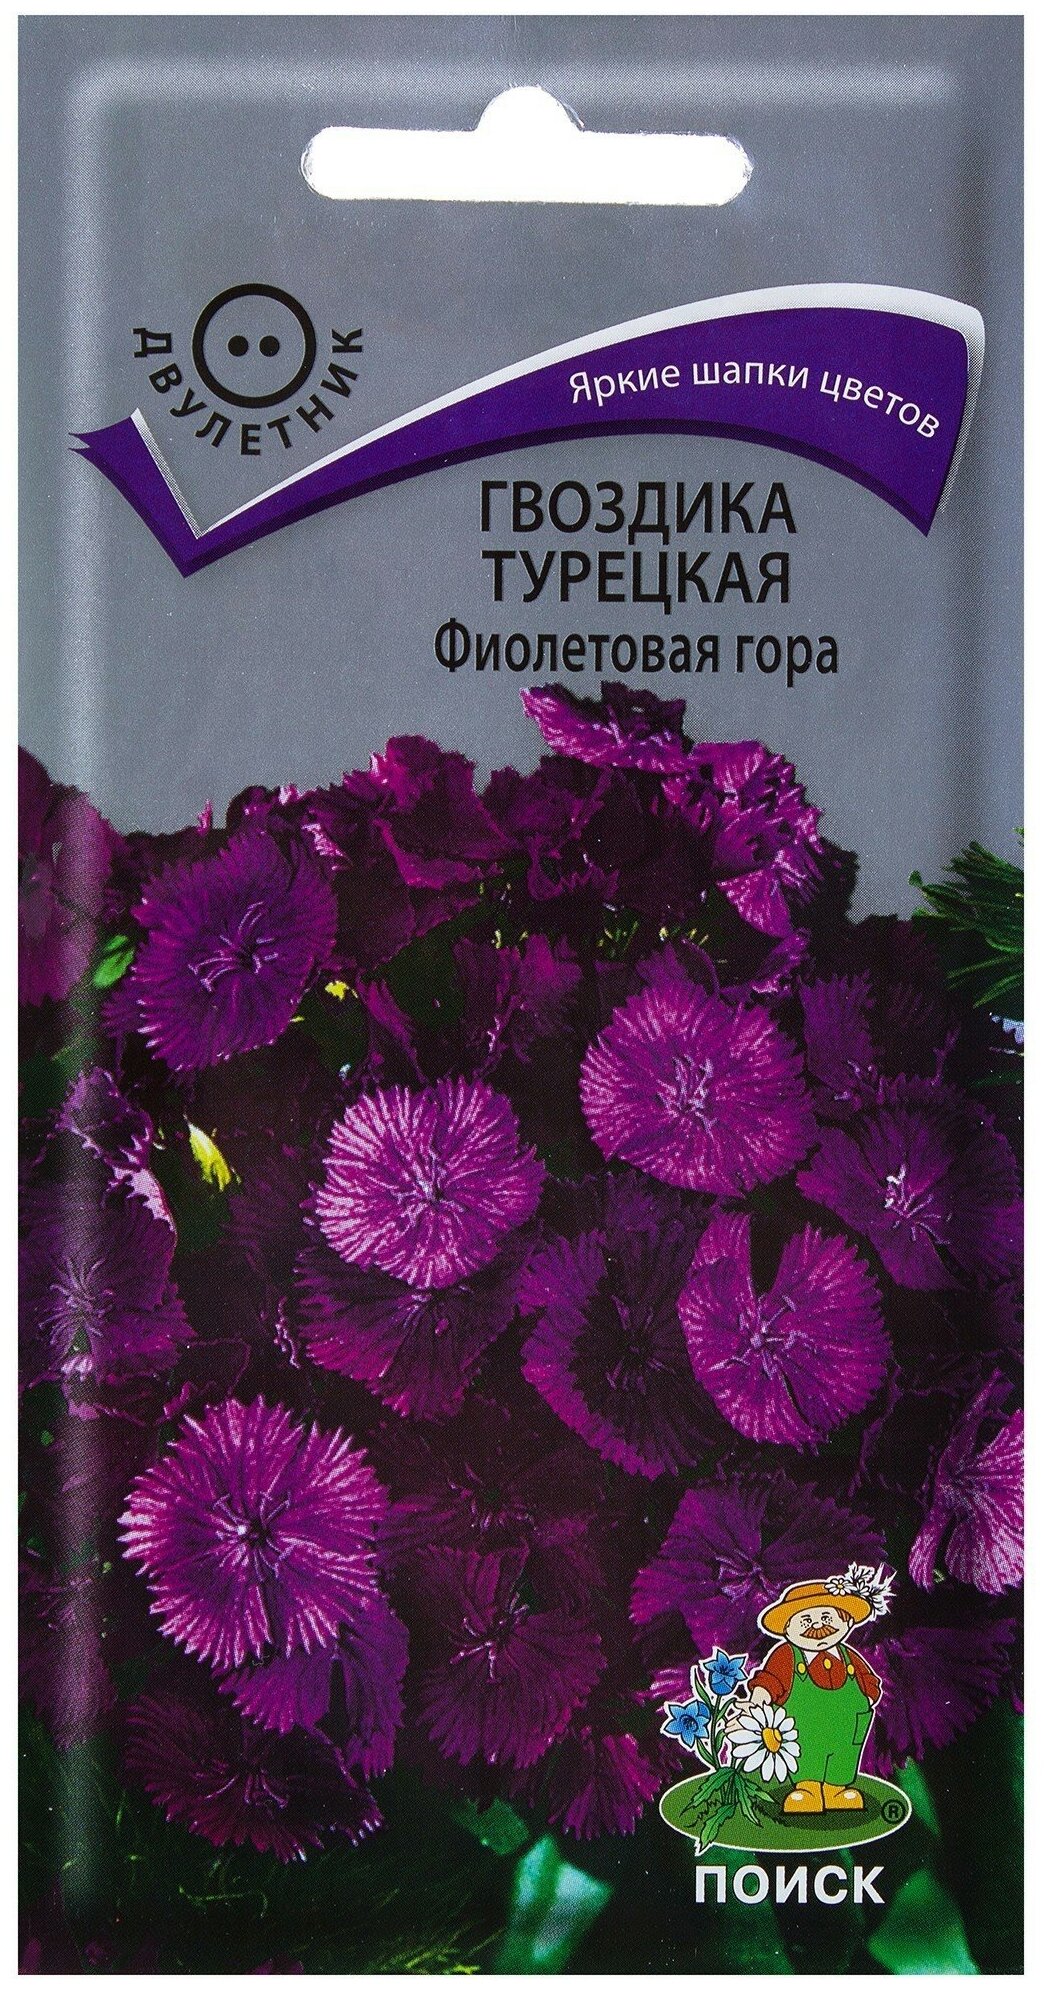 Гвоздика турецкая "Поиск" Фиолетовая гора 0,25г